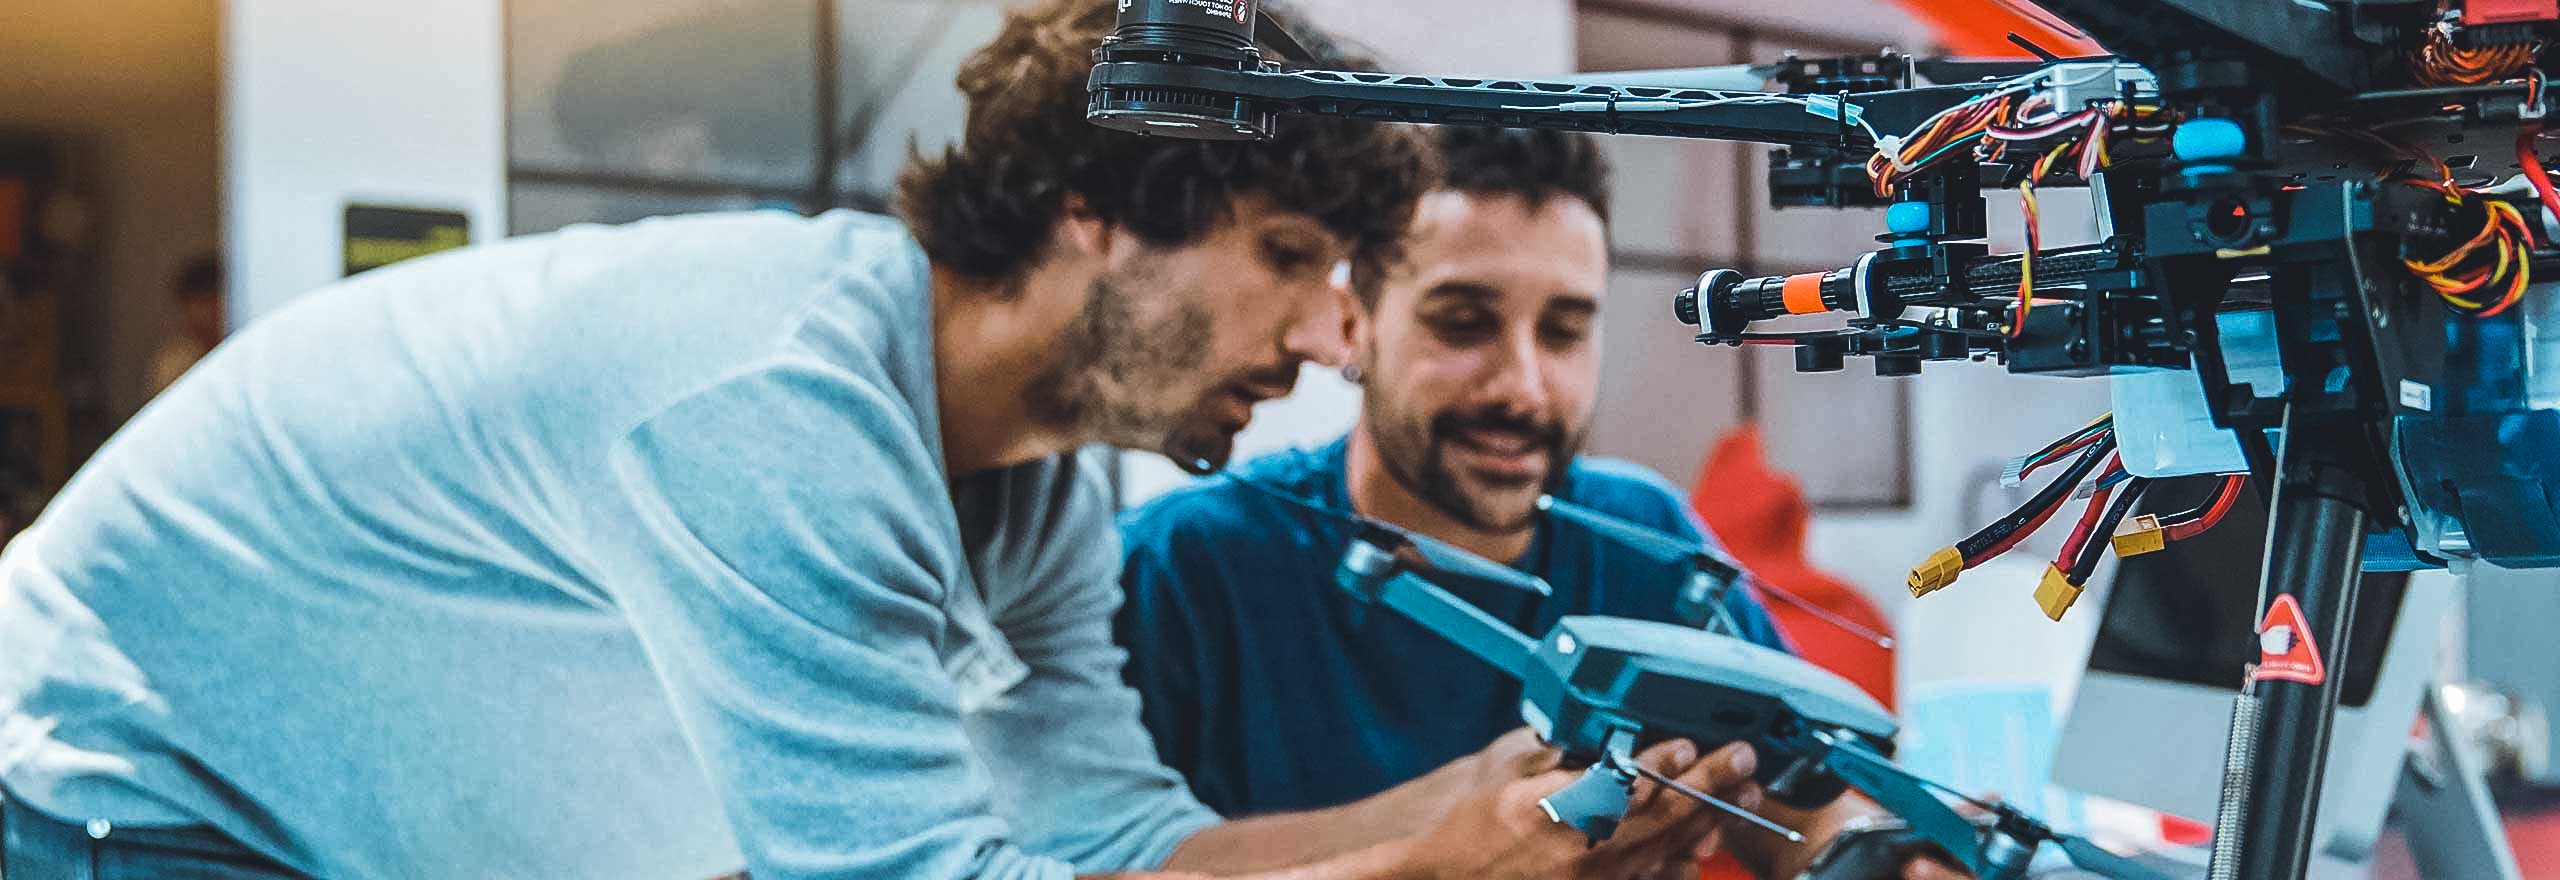 Due studenti che si interfacciano con un macchinario nell'ambito della propria ricerca